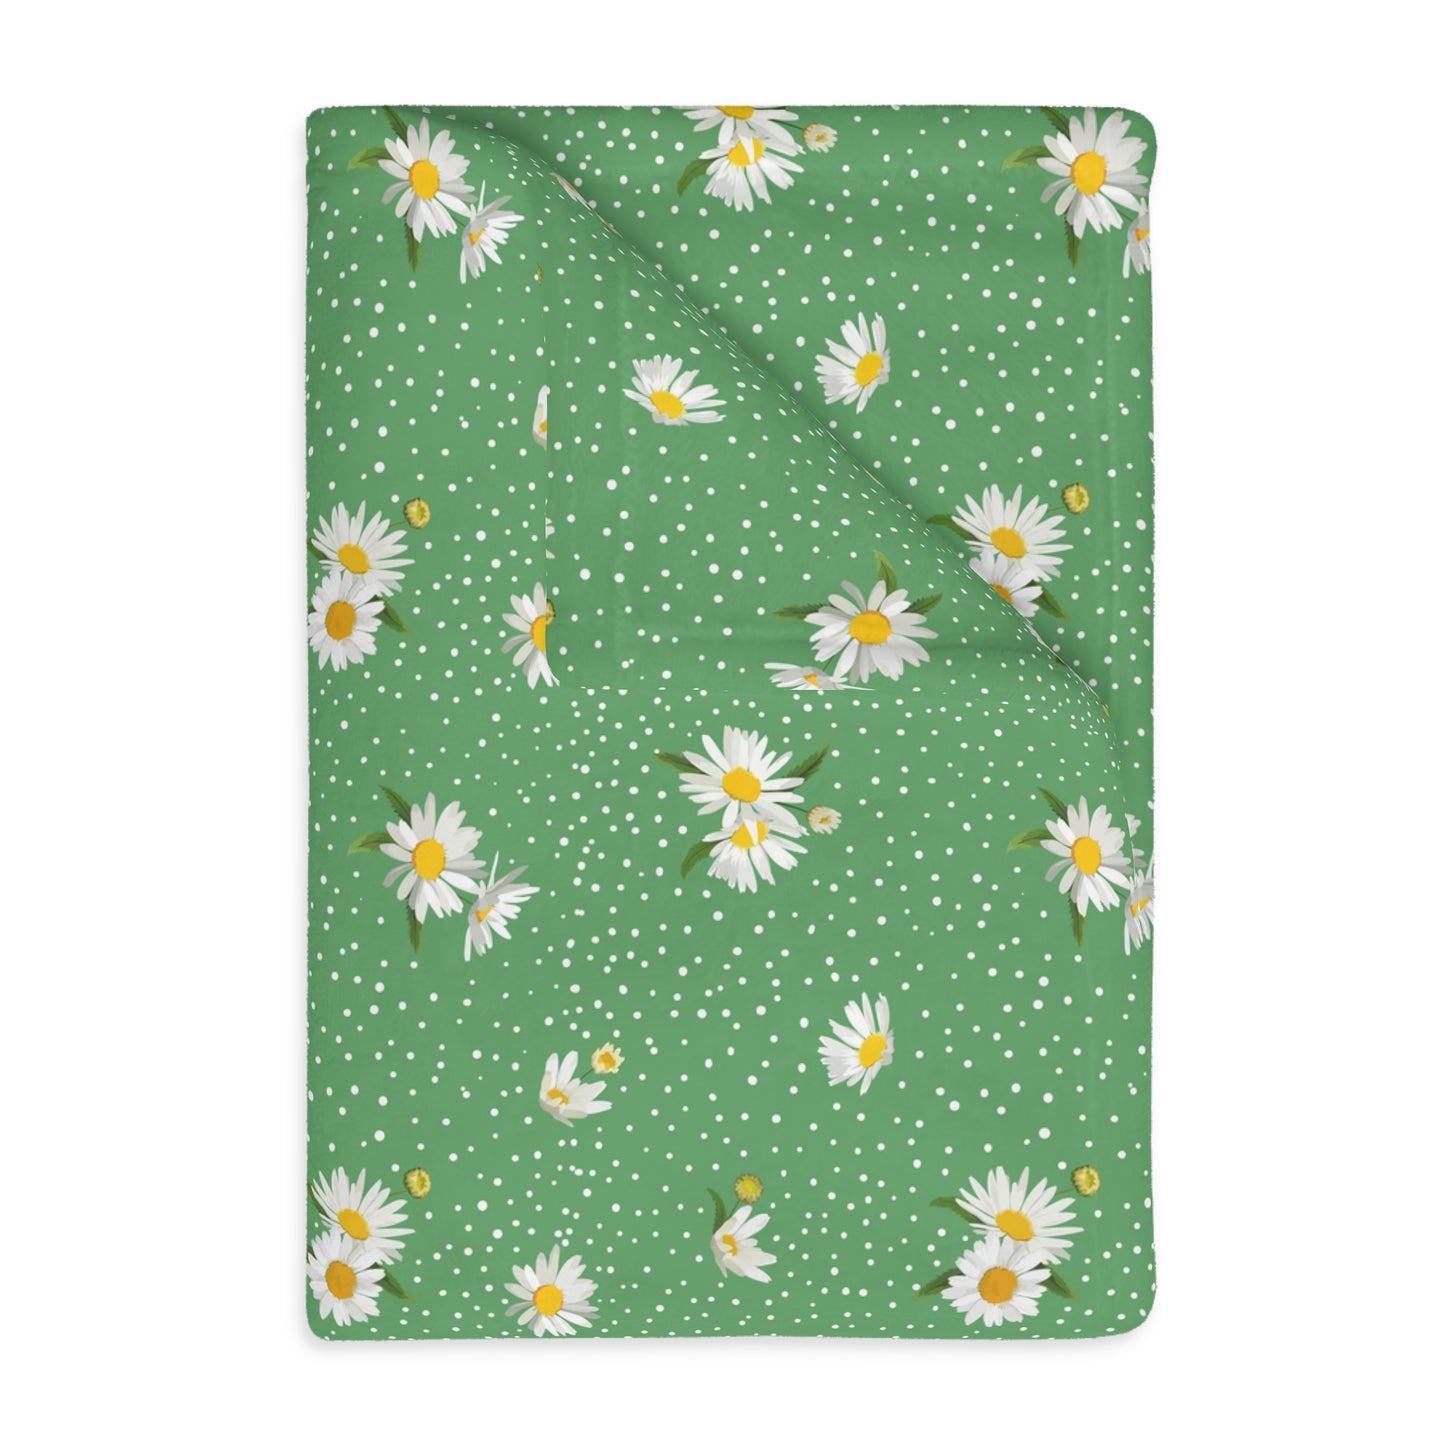 Daisy Fields Velveteen Microfiber Blanket (Two-sided print)